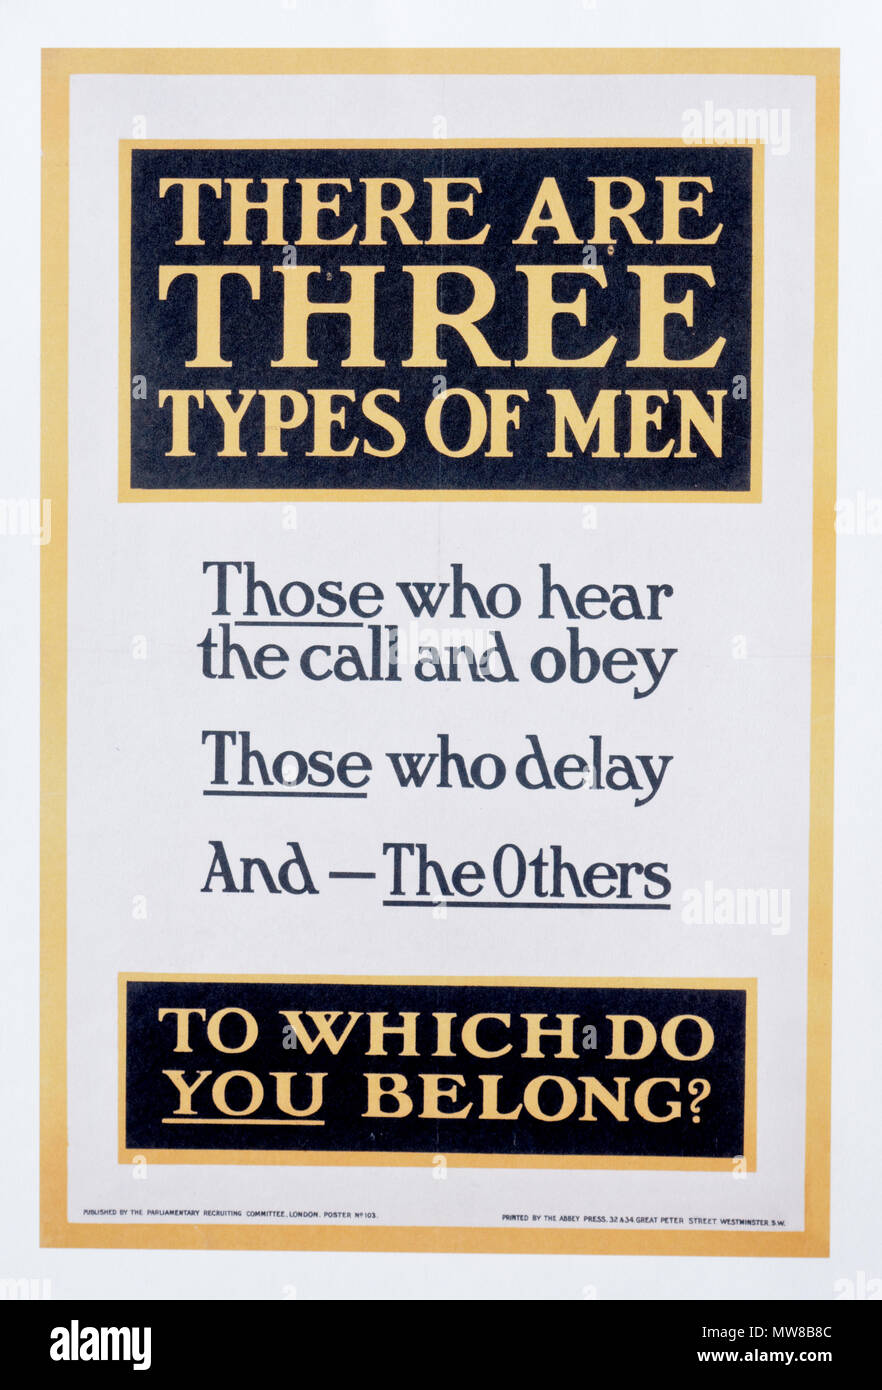 Une affiche de la première guerre mondiale qu'il y a trois types d'hommes - ceux qui font du bénévolat, ceux qui attendent et les autres Banque D'Images